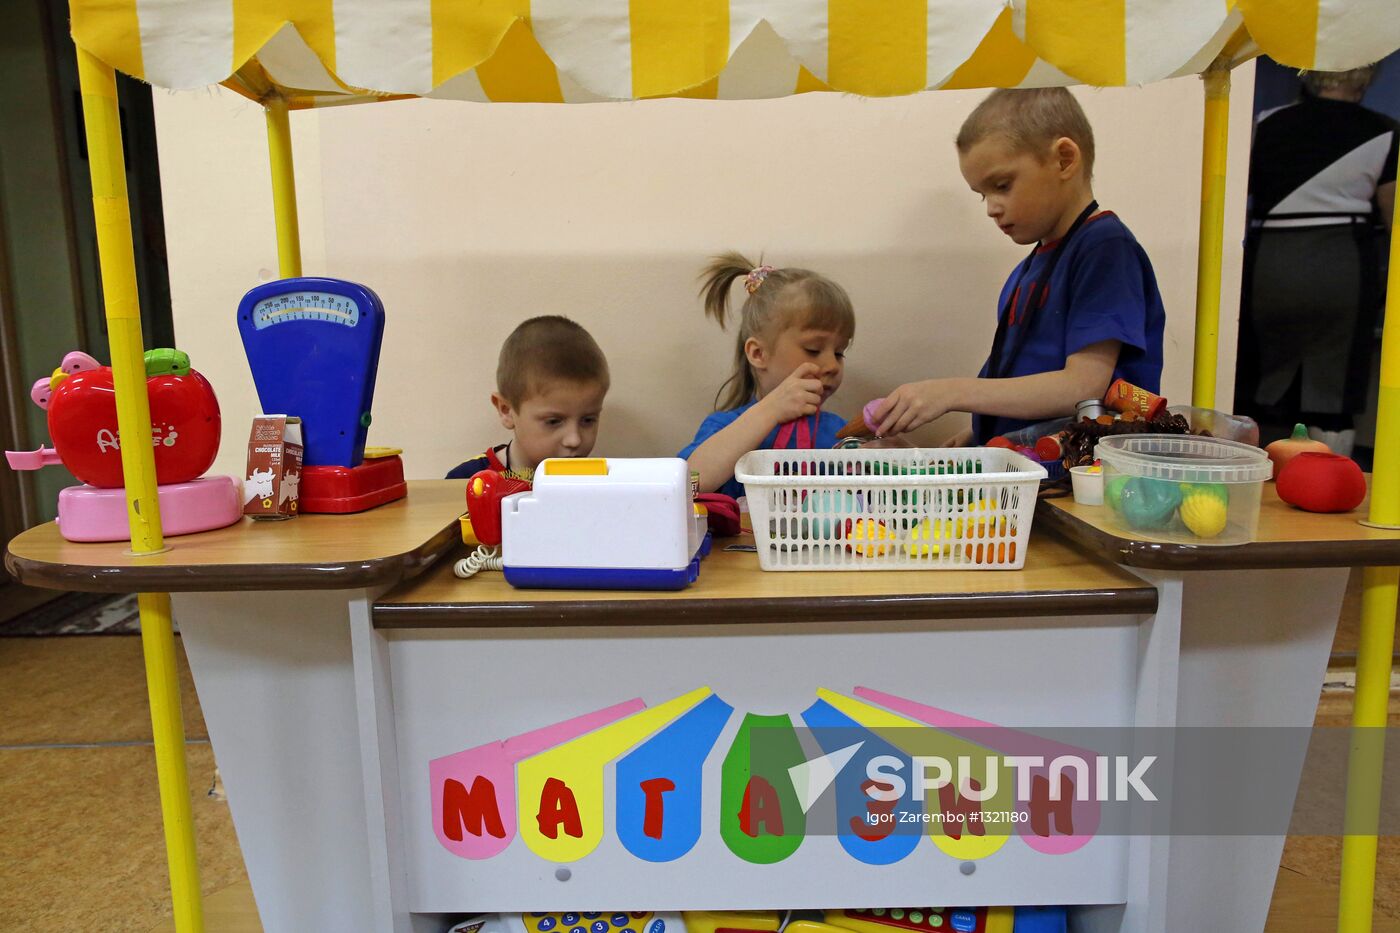 Children's home in Kaliningrad